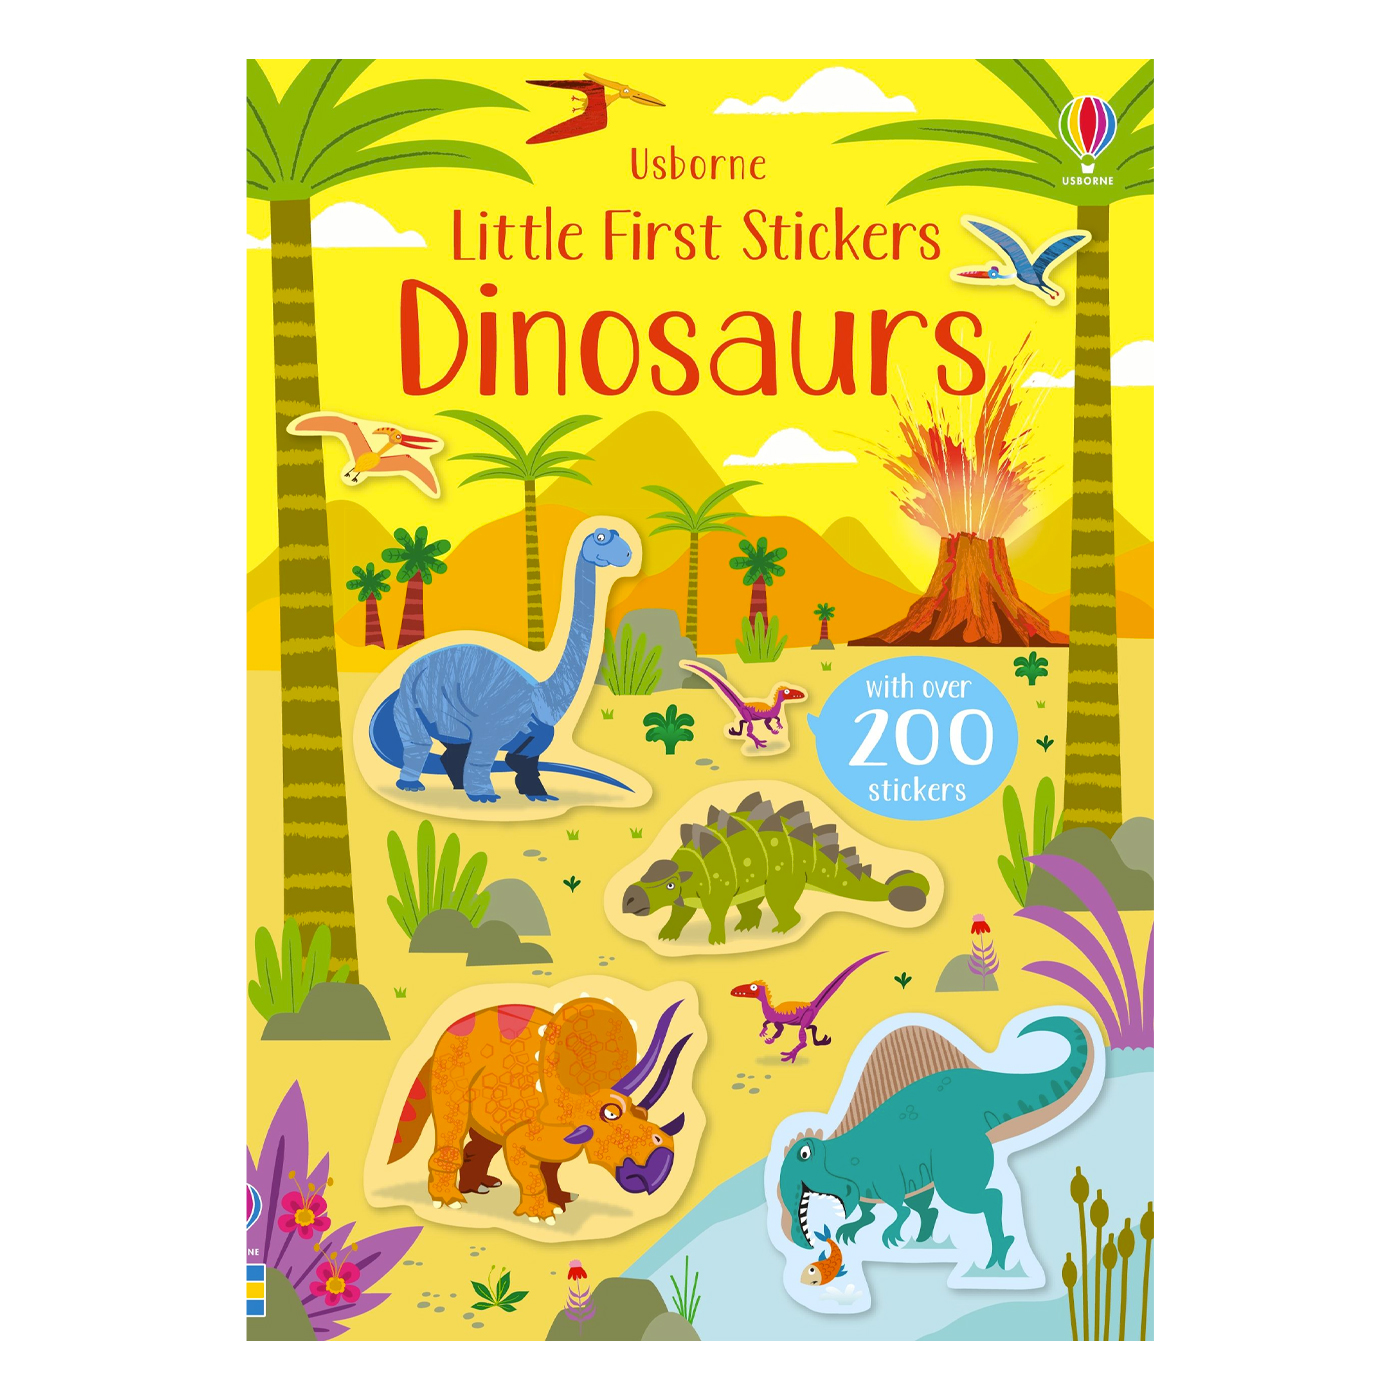  Little First Sticker Dinosaurs